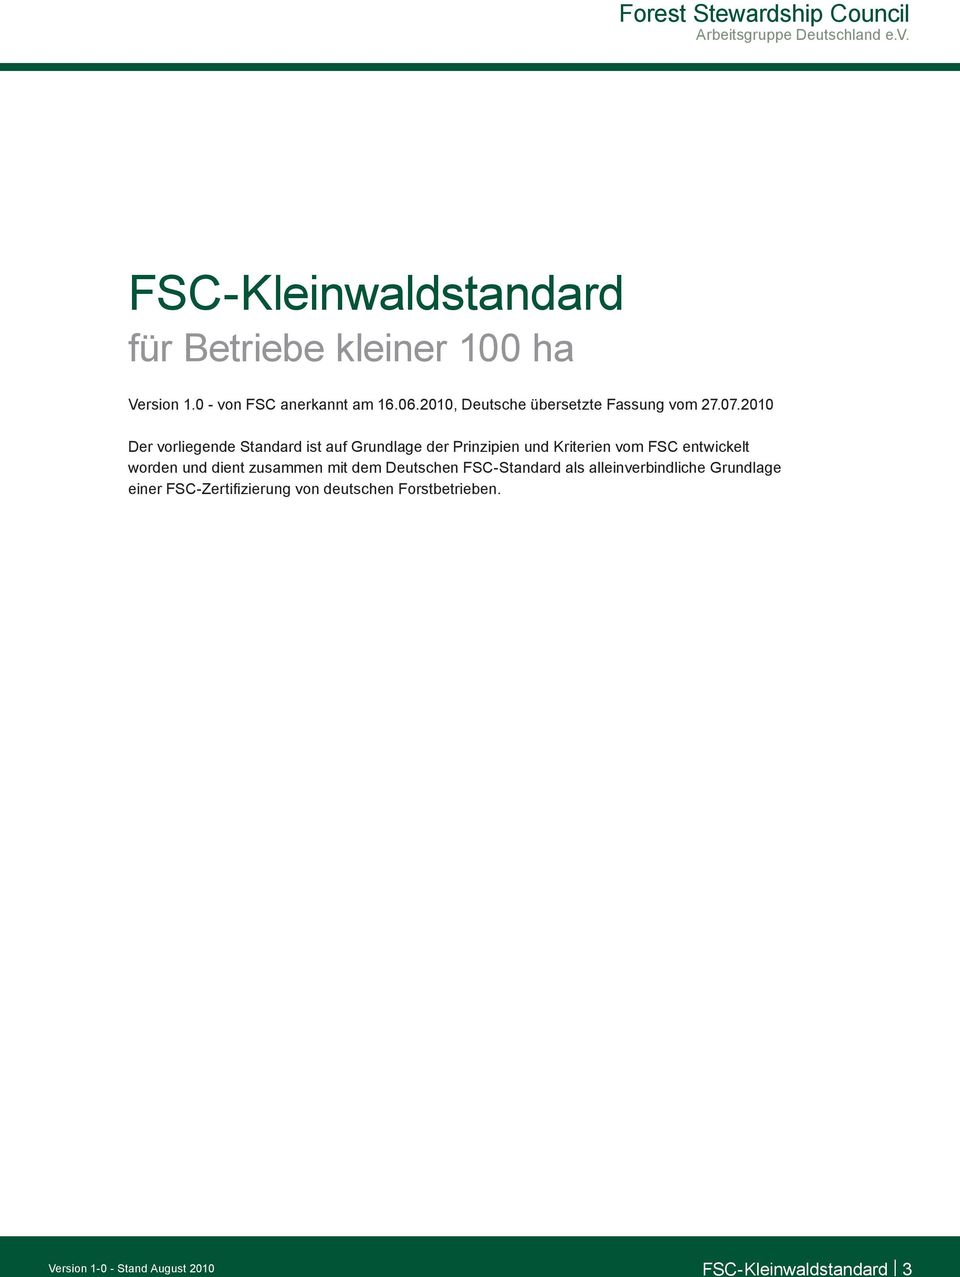 2010 Der vorliegende Standard ist auf Grundlage der Prinzipien und Kriterien vom FSC entwickelt worden und dient zusammen